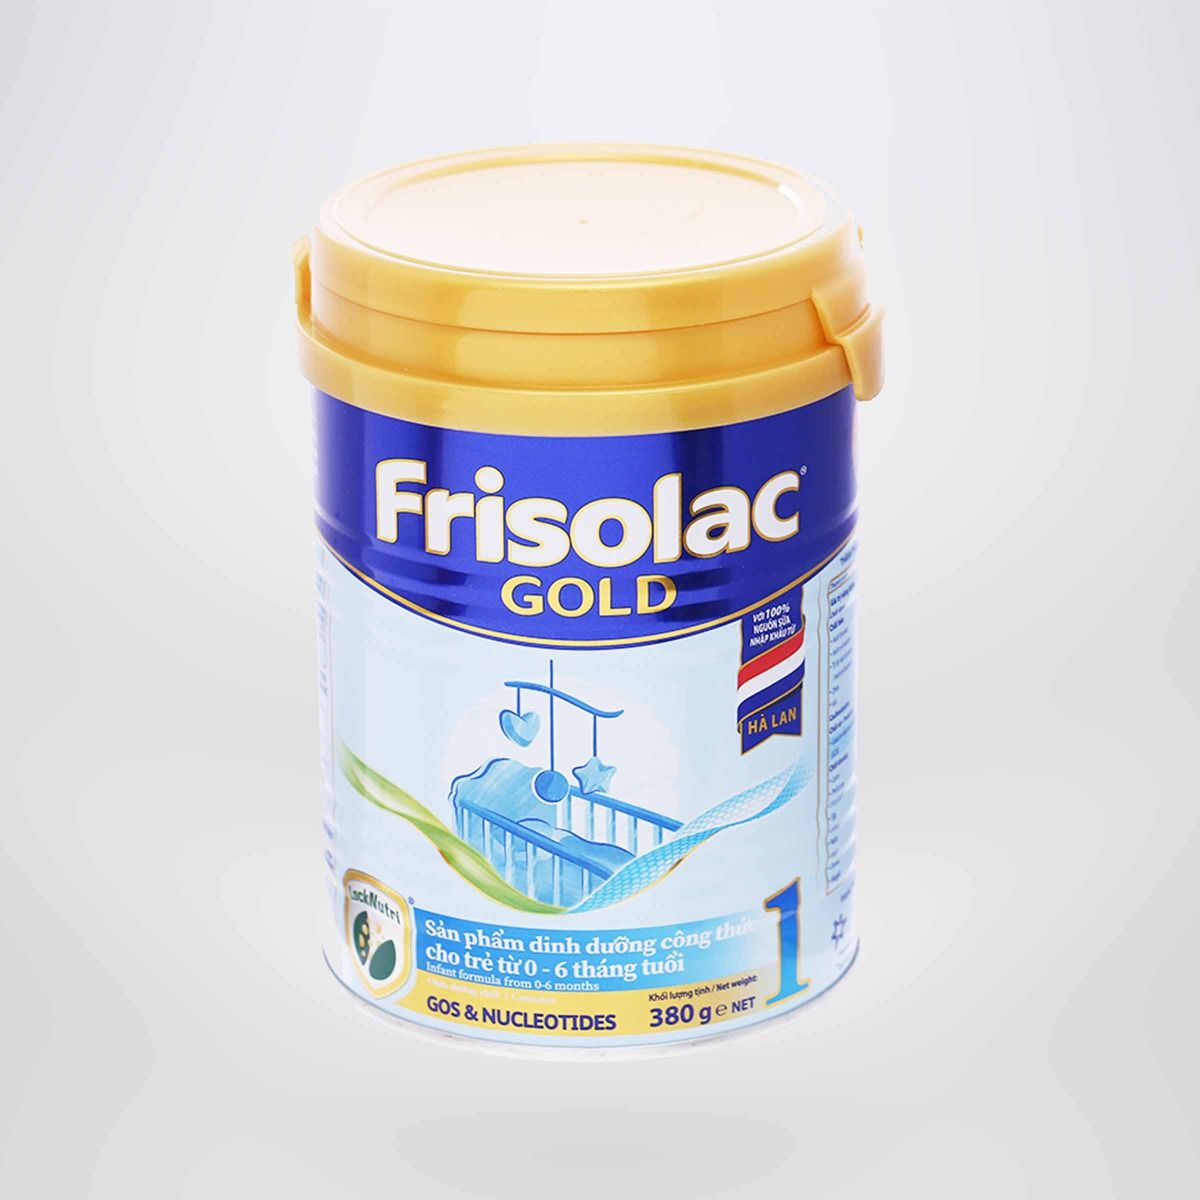 Sữa bột Frisolac Gold 1 lon thiếc 380G-cho trẻ 0-6 tháng tuổi